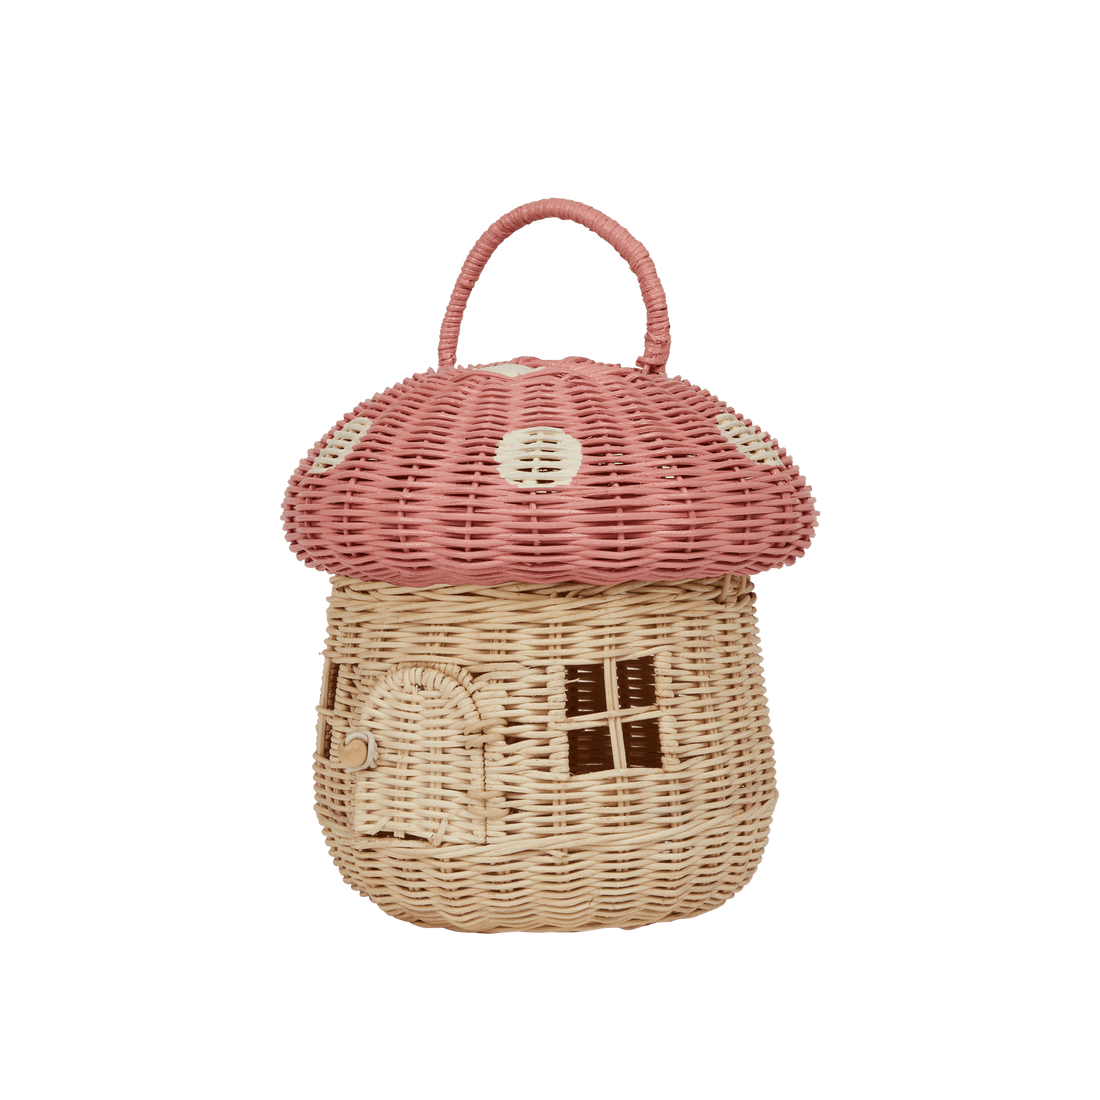 Olli Ella Rattan Mushroom Basket, Musk - Hello Little Birdie